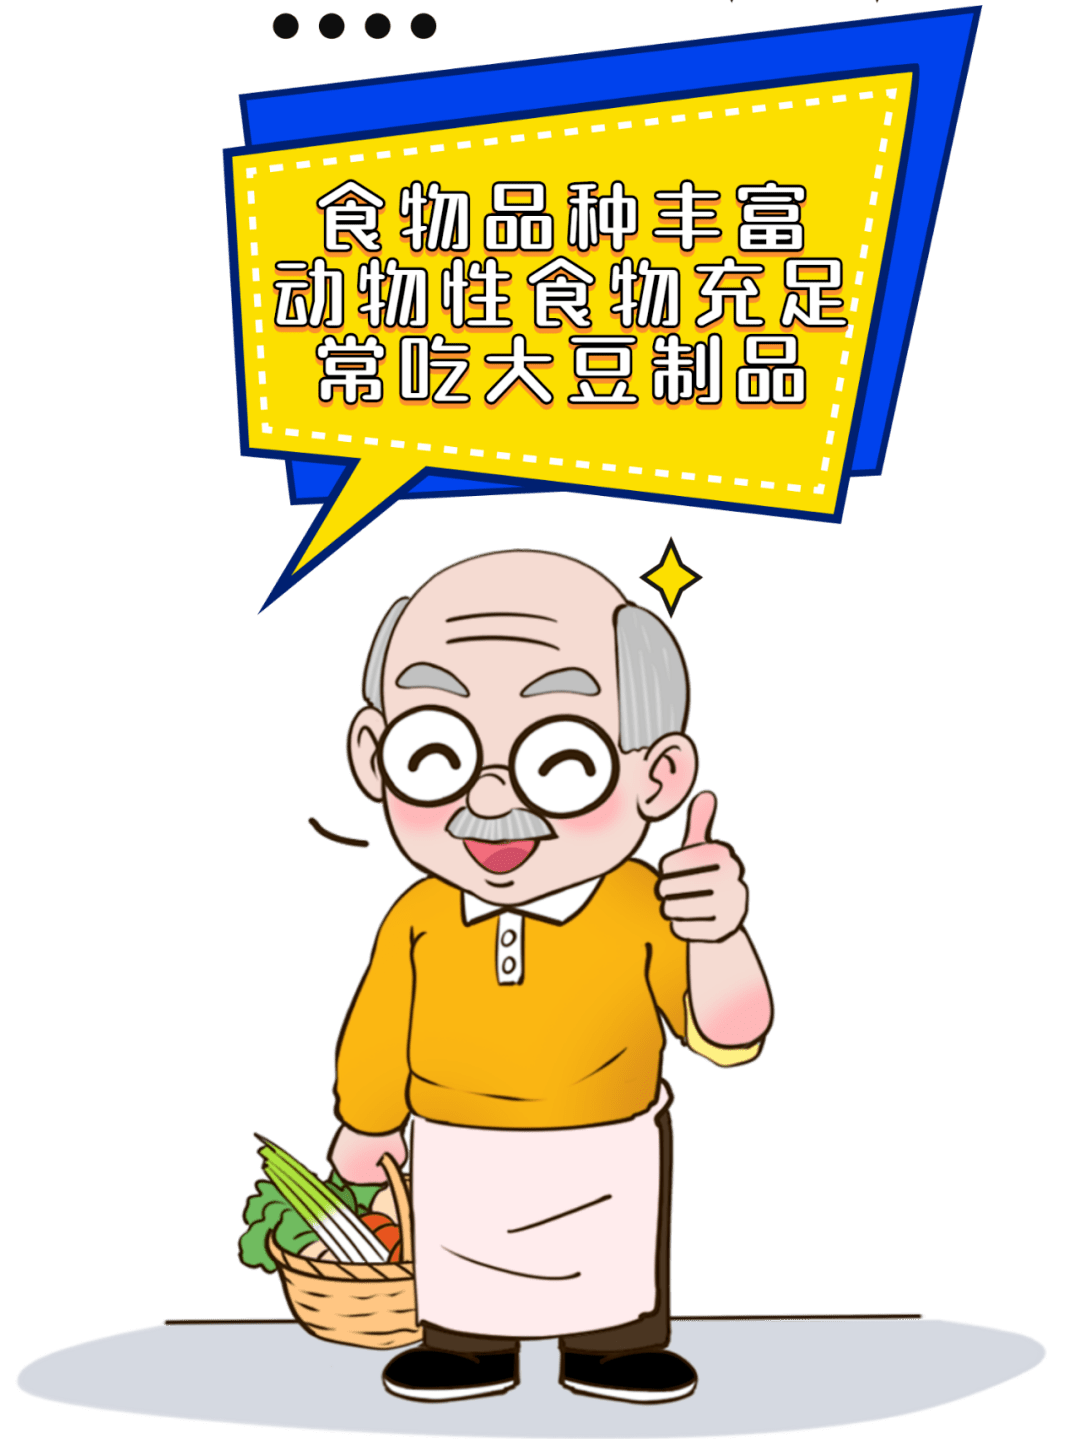 【老年健康宣传周】老年人膳食指南